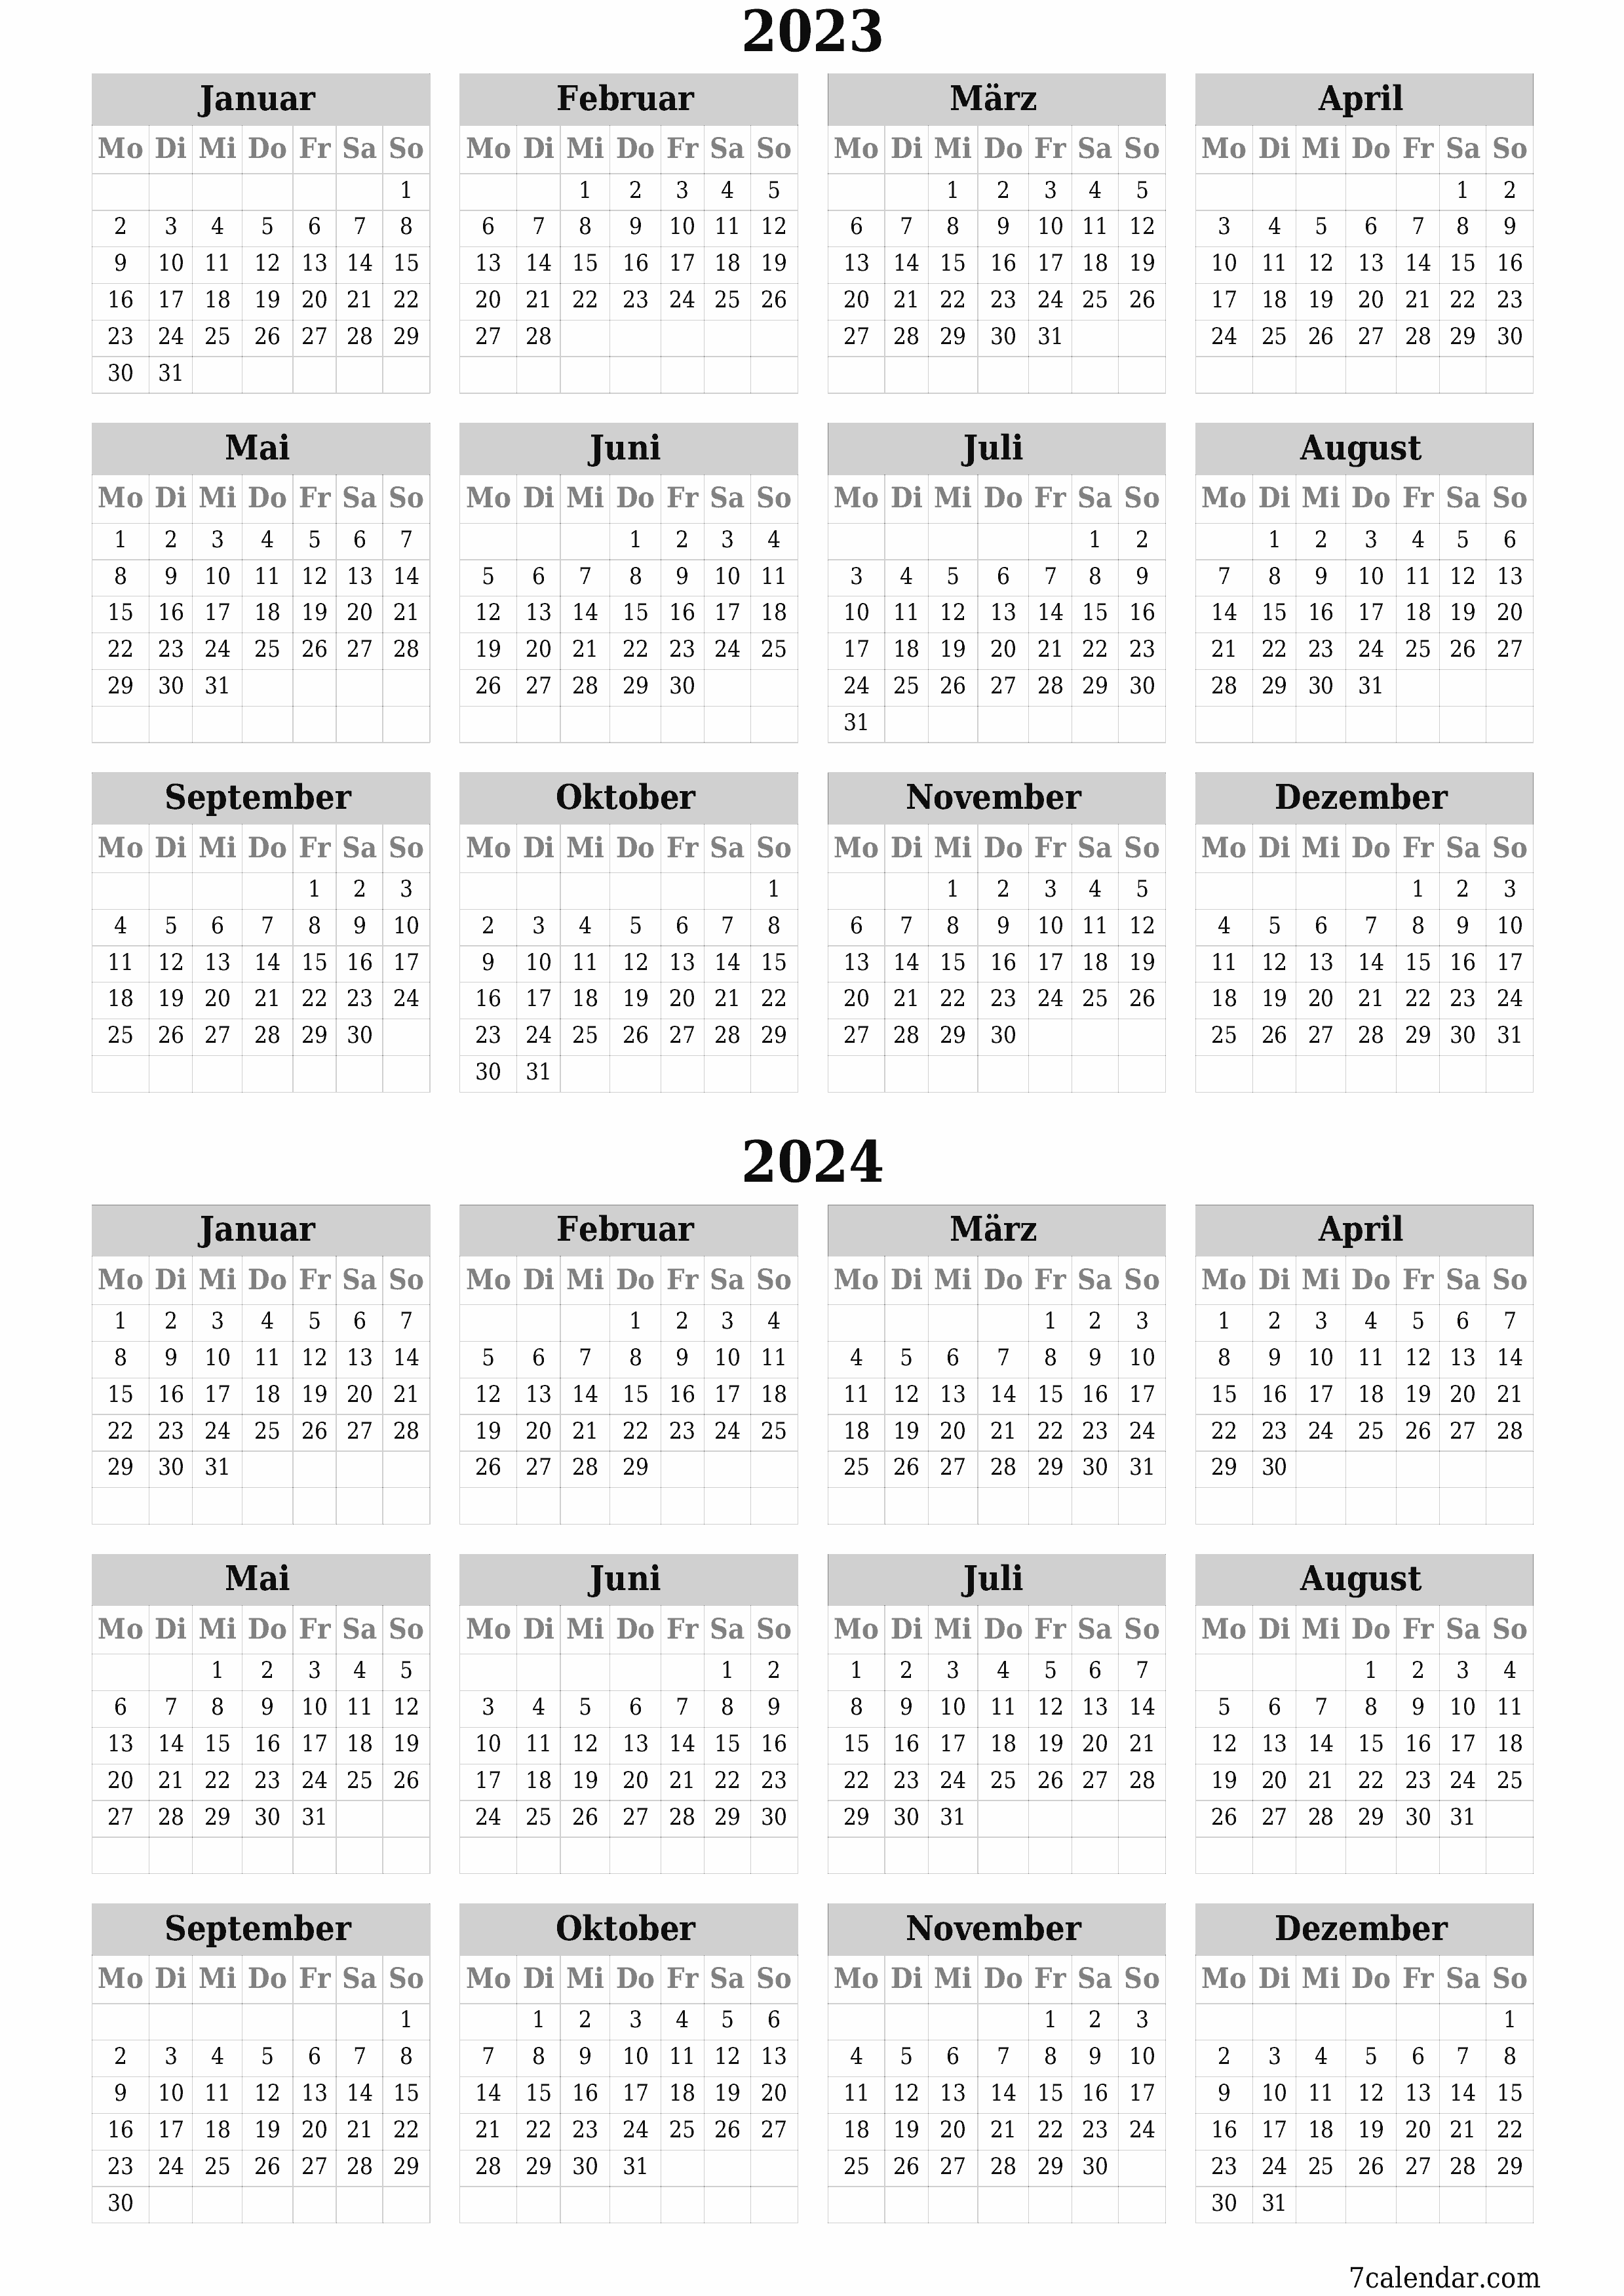 Leerer Jahreskalender für das Jahr 2023, 2024 speichern und als PDF PNG German - 7calendar.com drucken